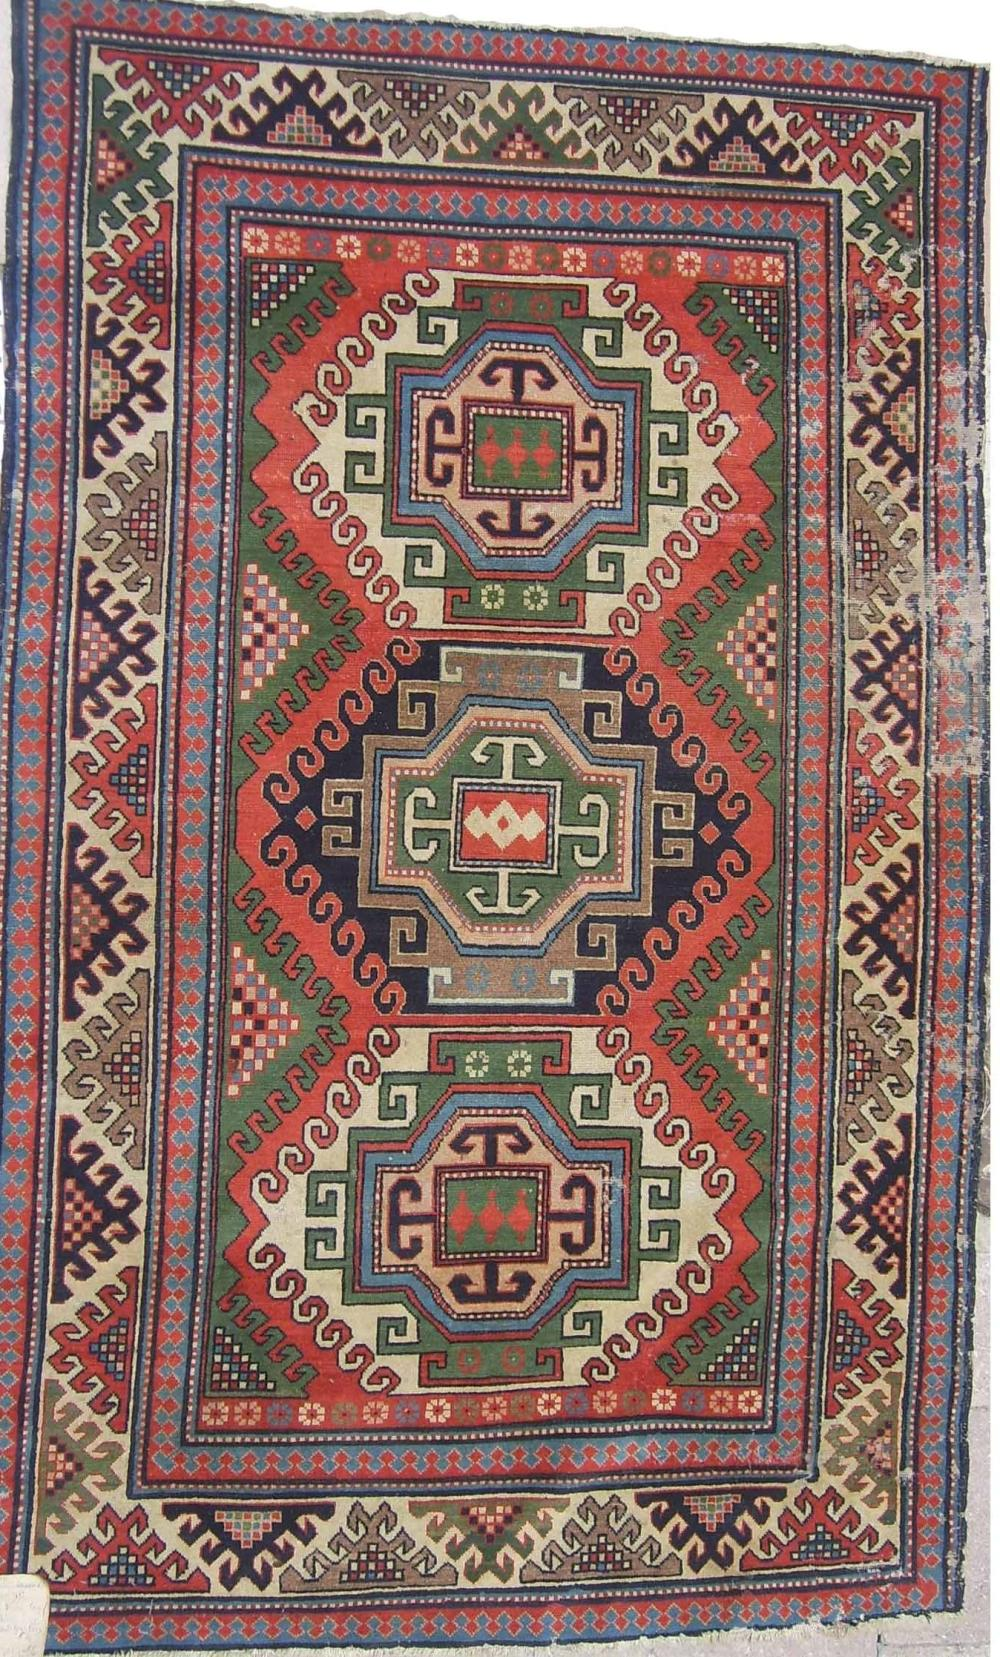 Həndəsi ornamentli Azərbaycan xalçaları